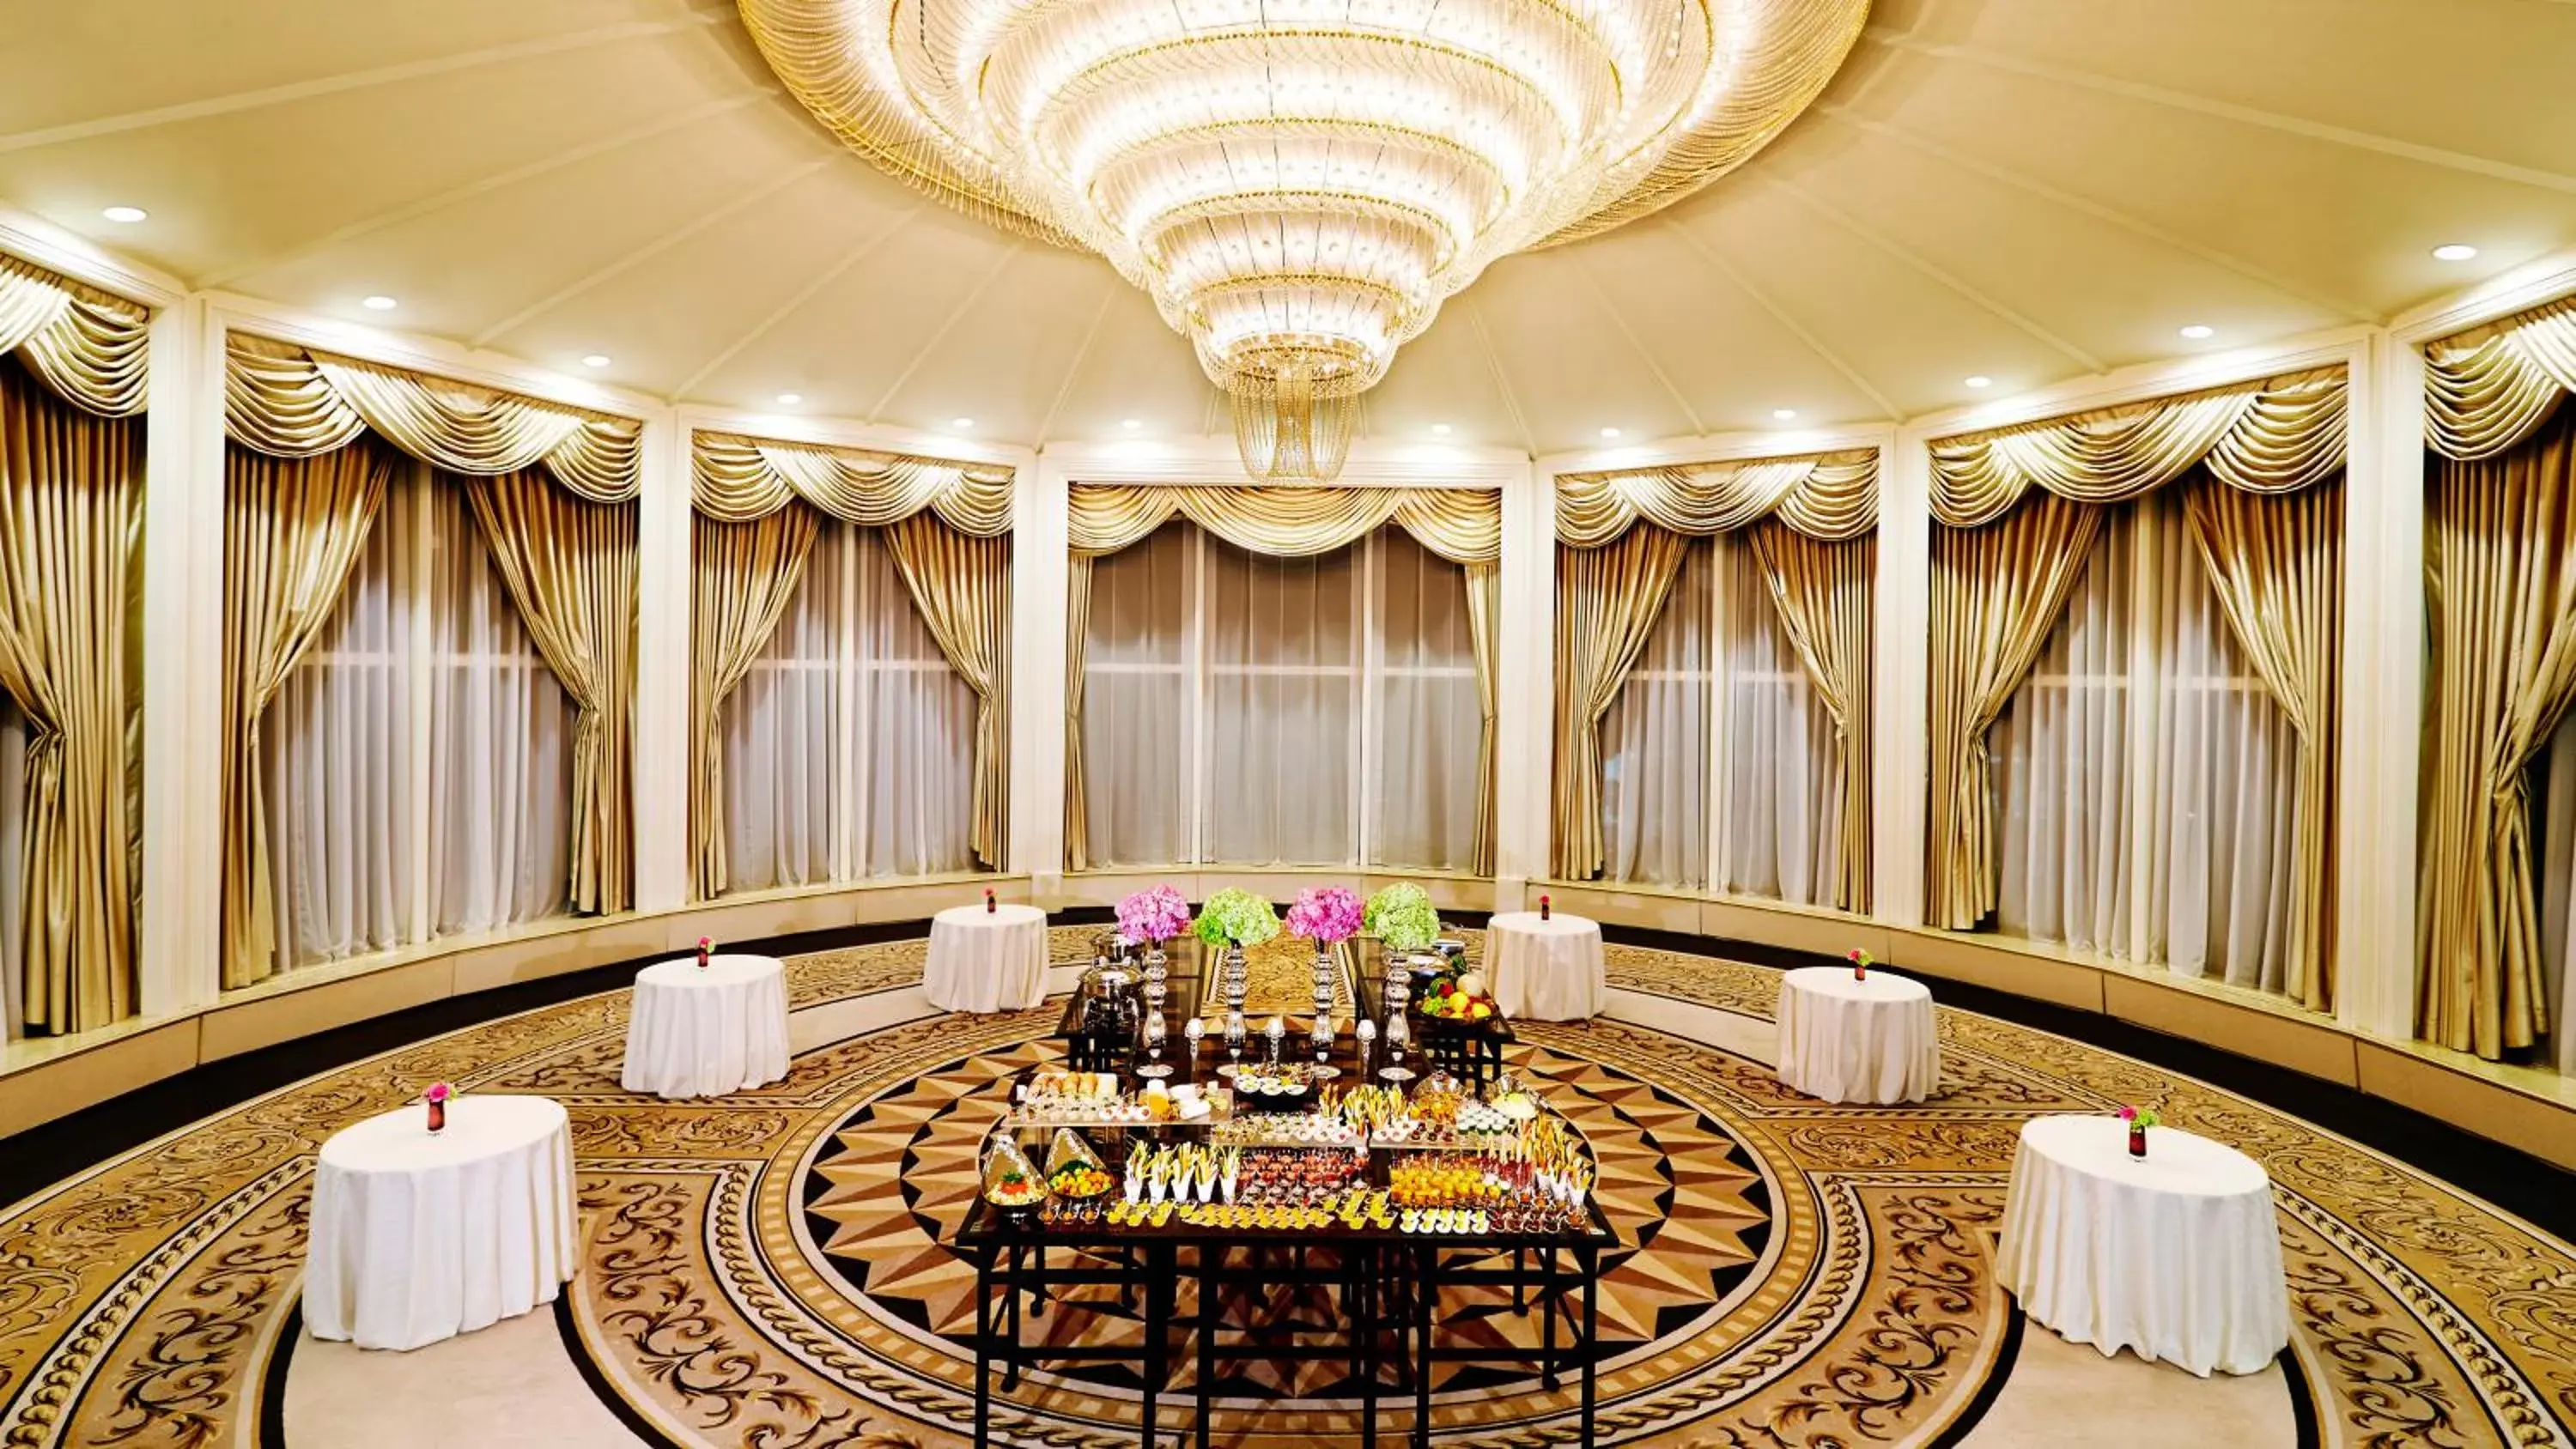 Meeting/conference room, Banquet Facilities in RIHGA Royal Hotel Osaka